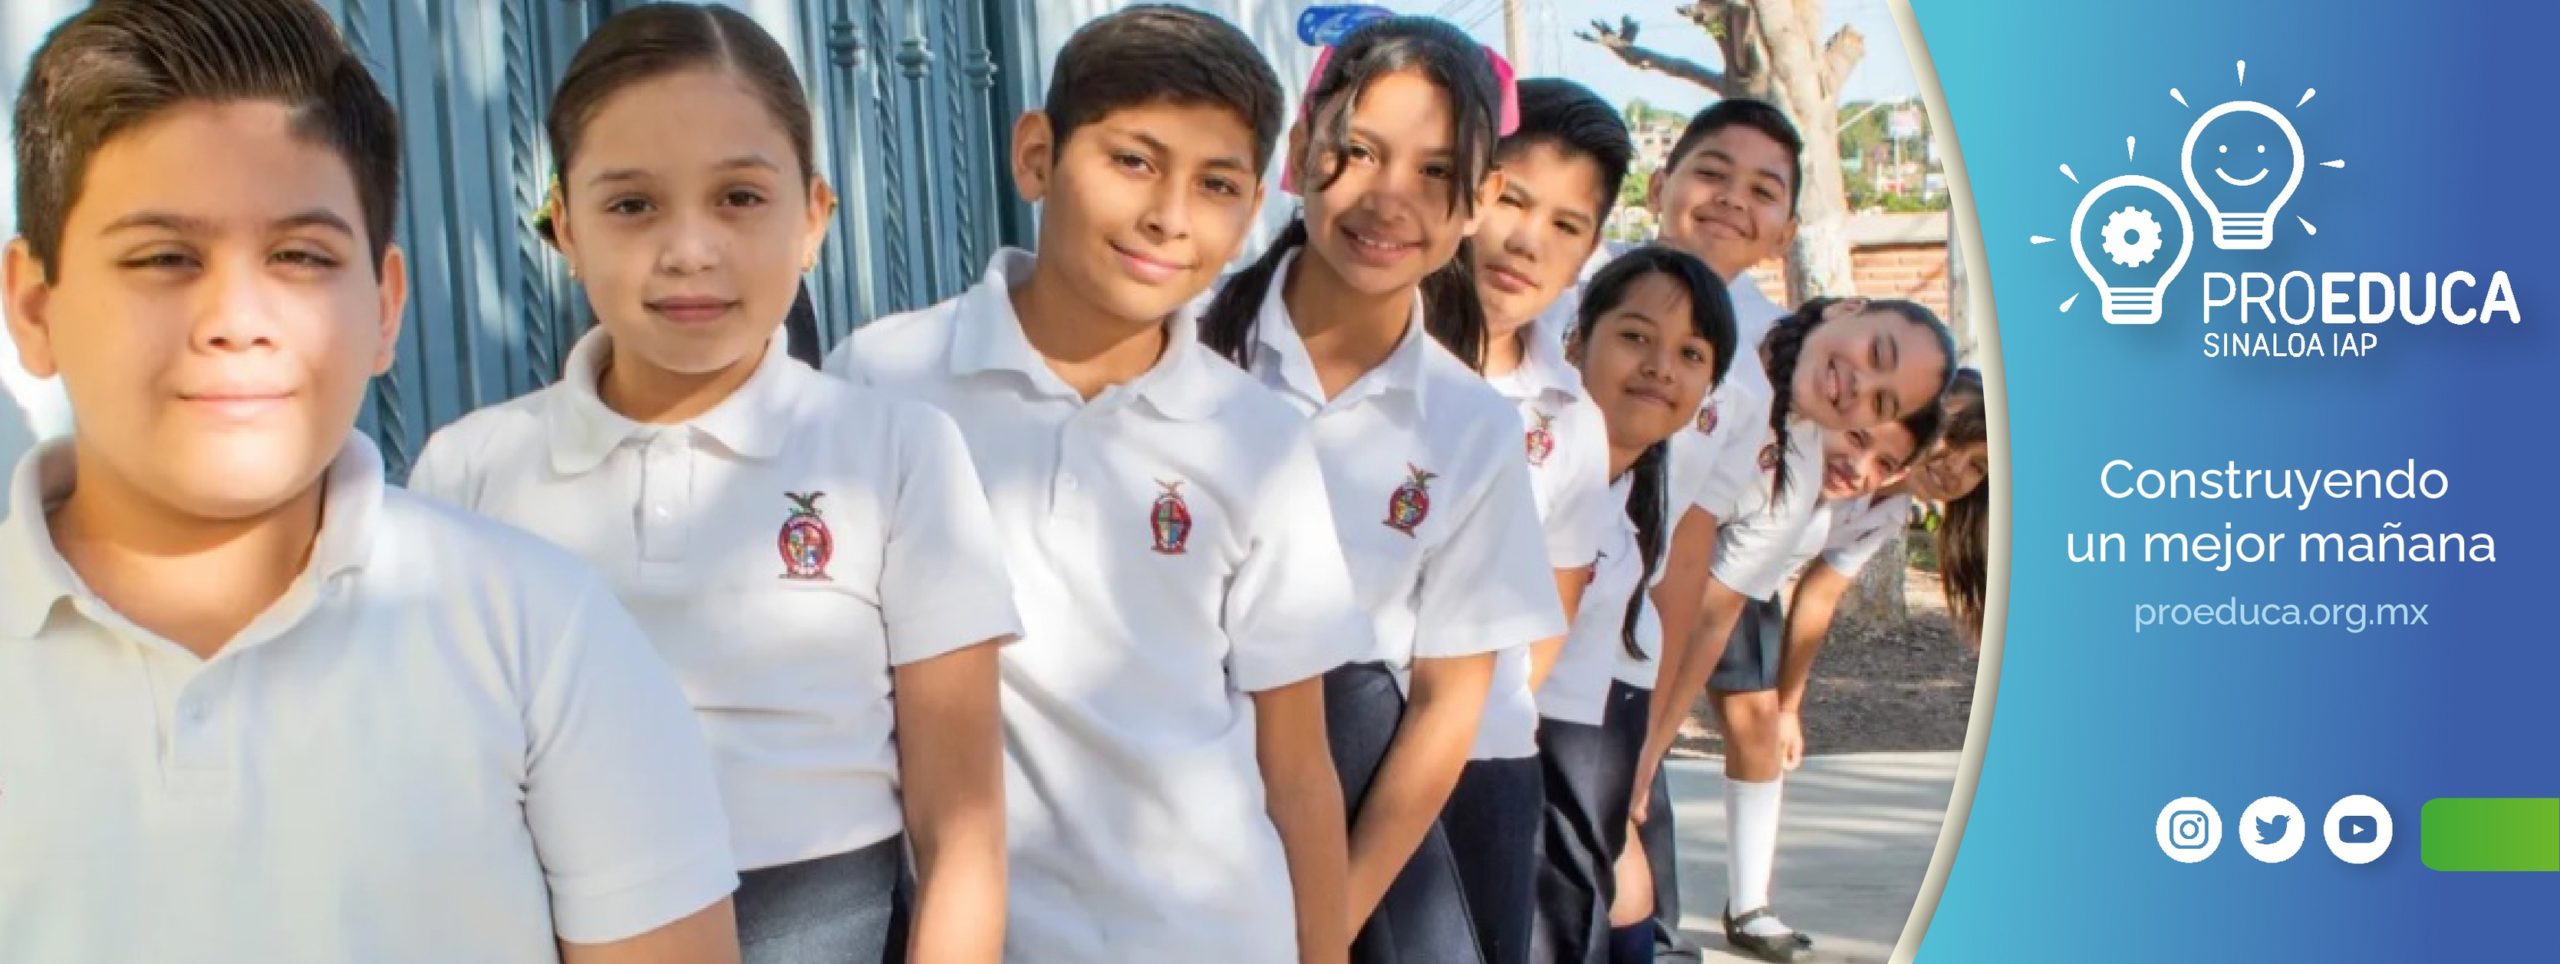 PROEDUCA impulsa el desarrollo educativo en Sinaloa